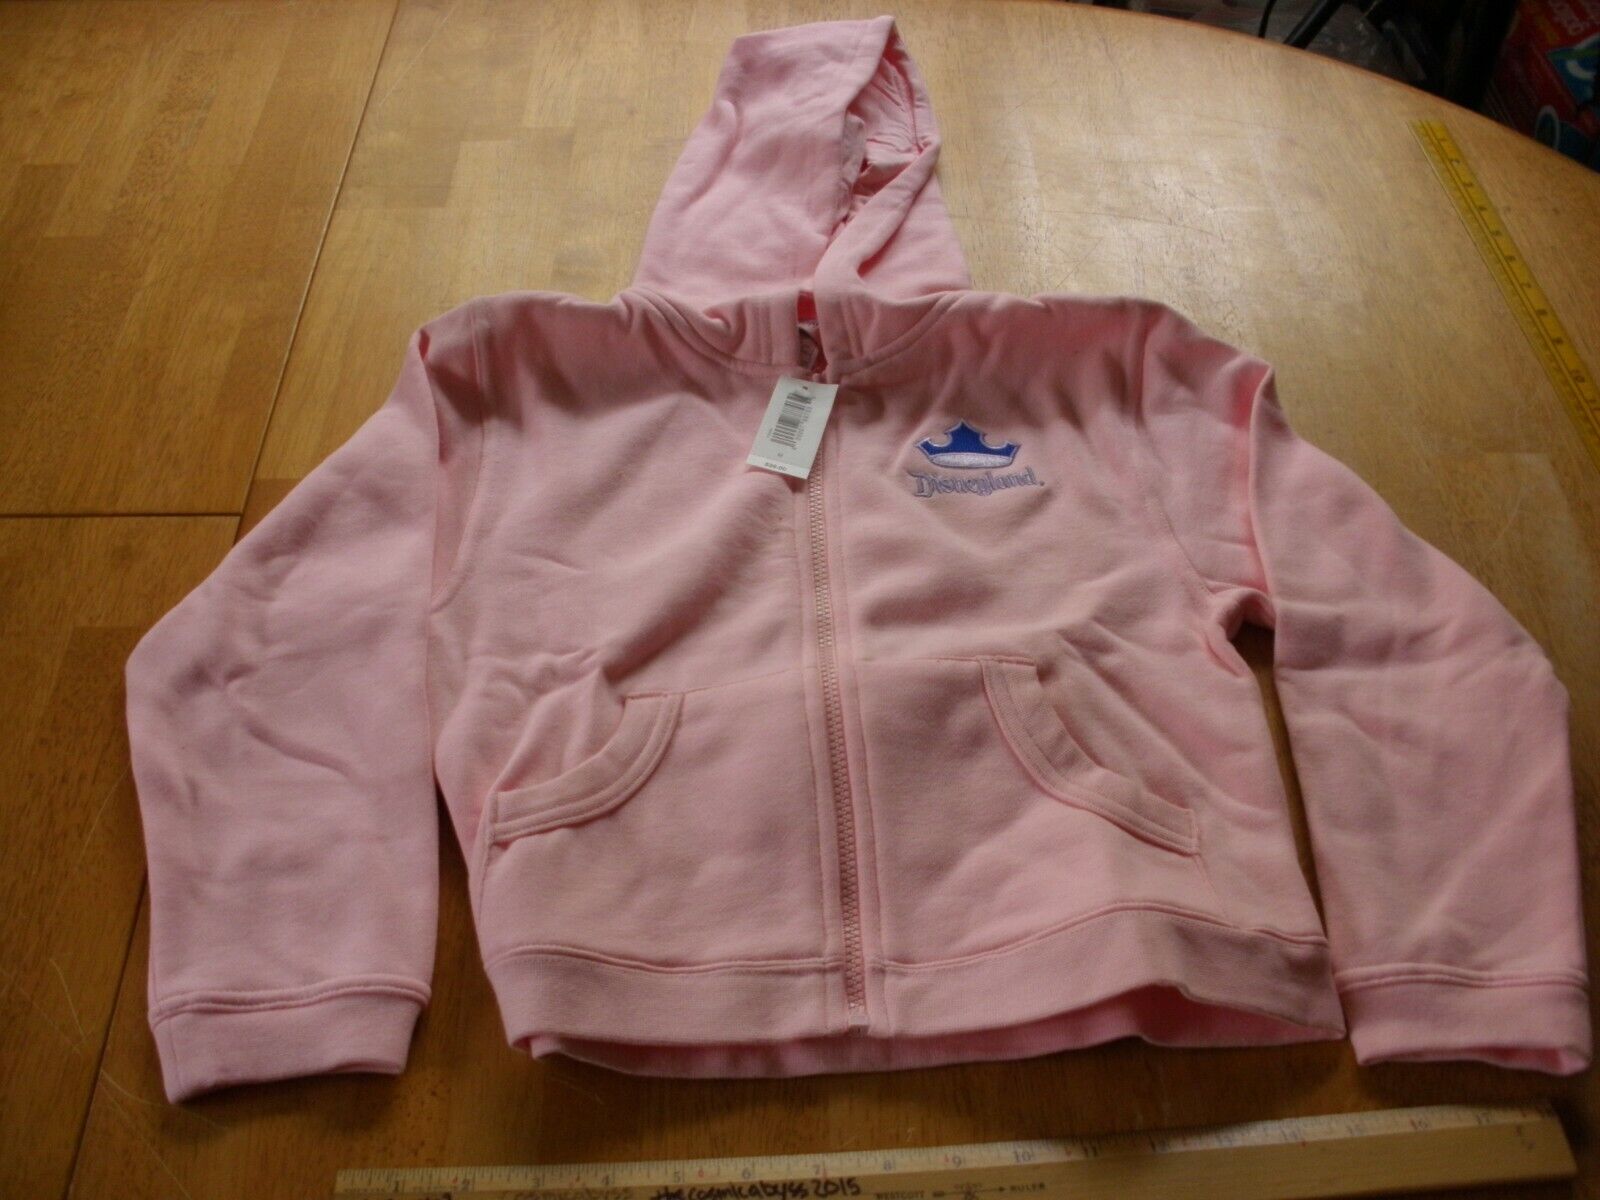 Disneyland princess crown pink zip hoody sweatshirt youth M Disney NWT 2000s